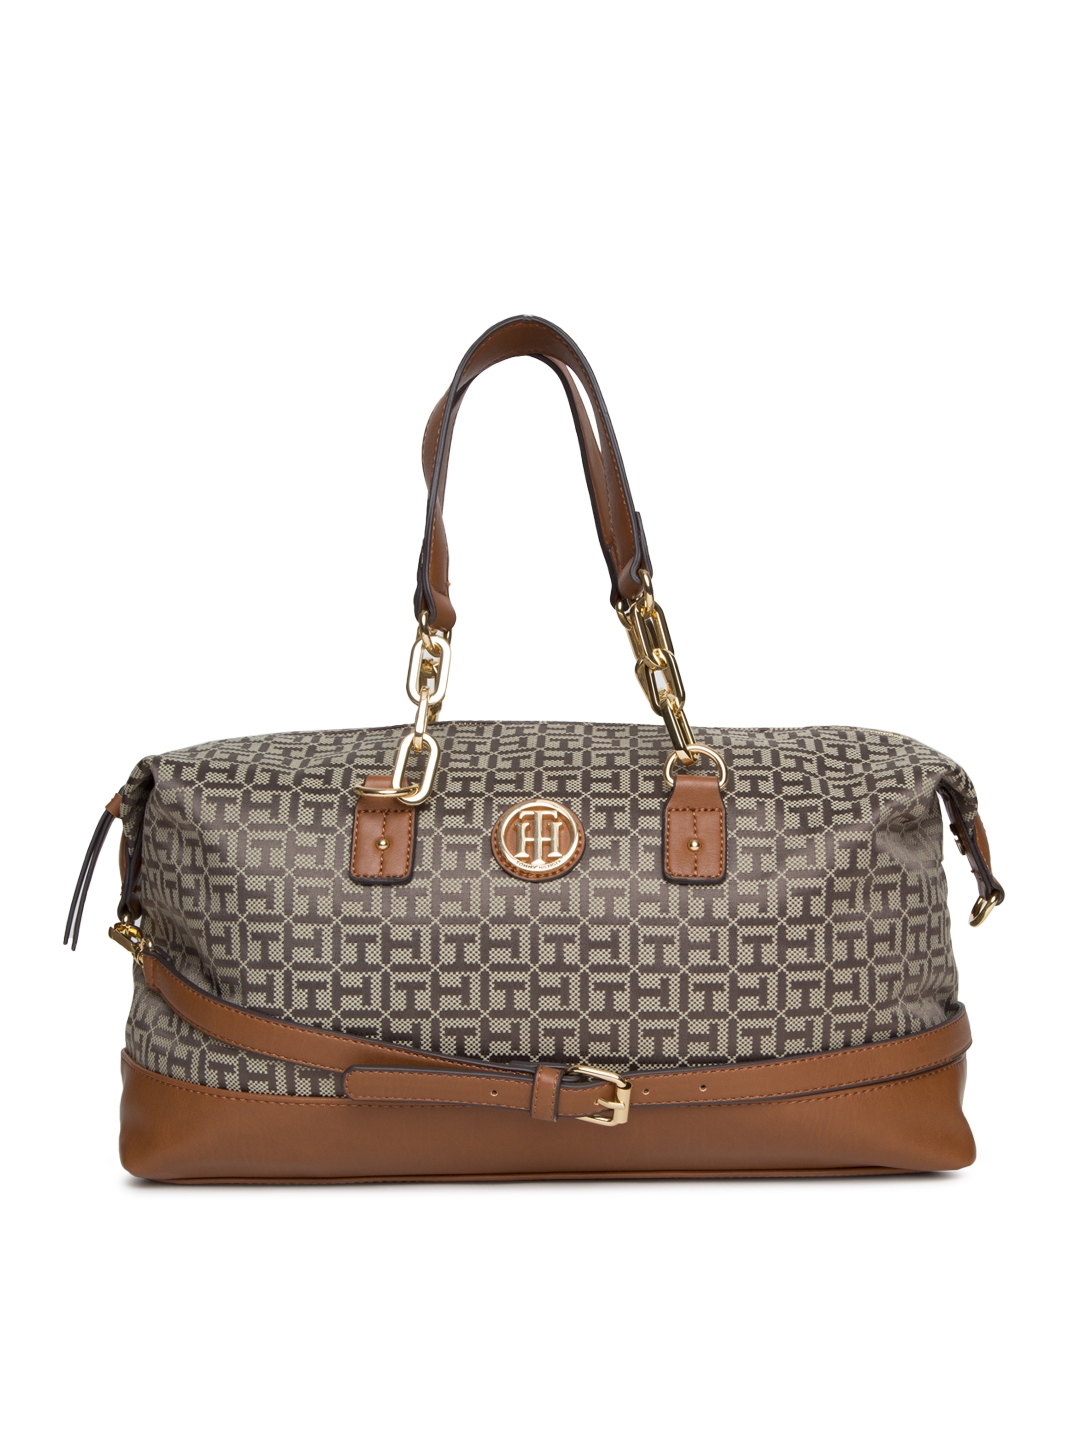 Buy Tommy Hilfiger Brown Self Design Shoulder Bag - Handbags for Women 2062085 | Myntra